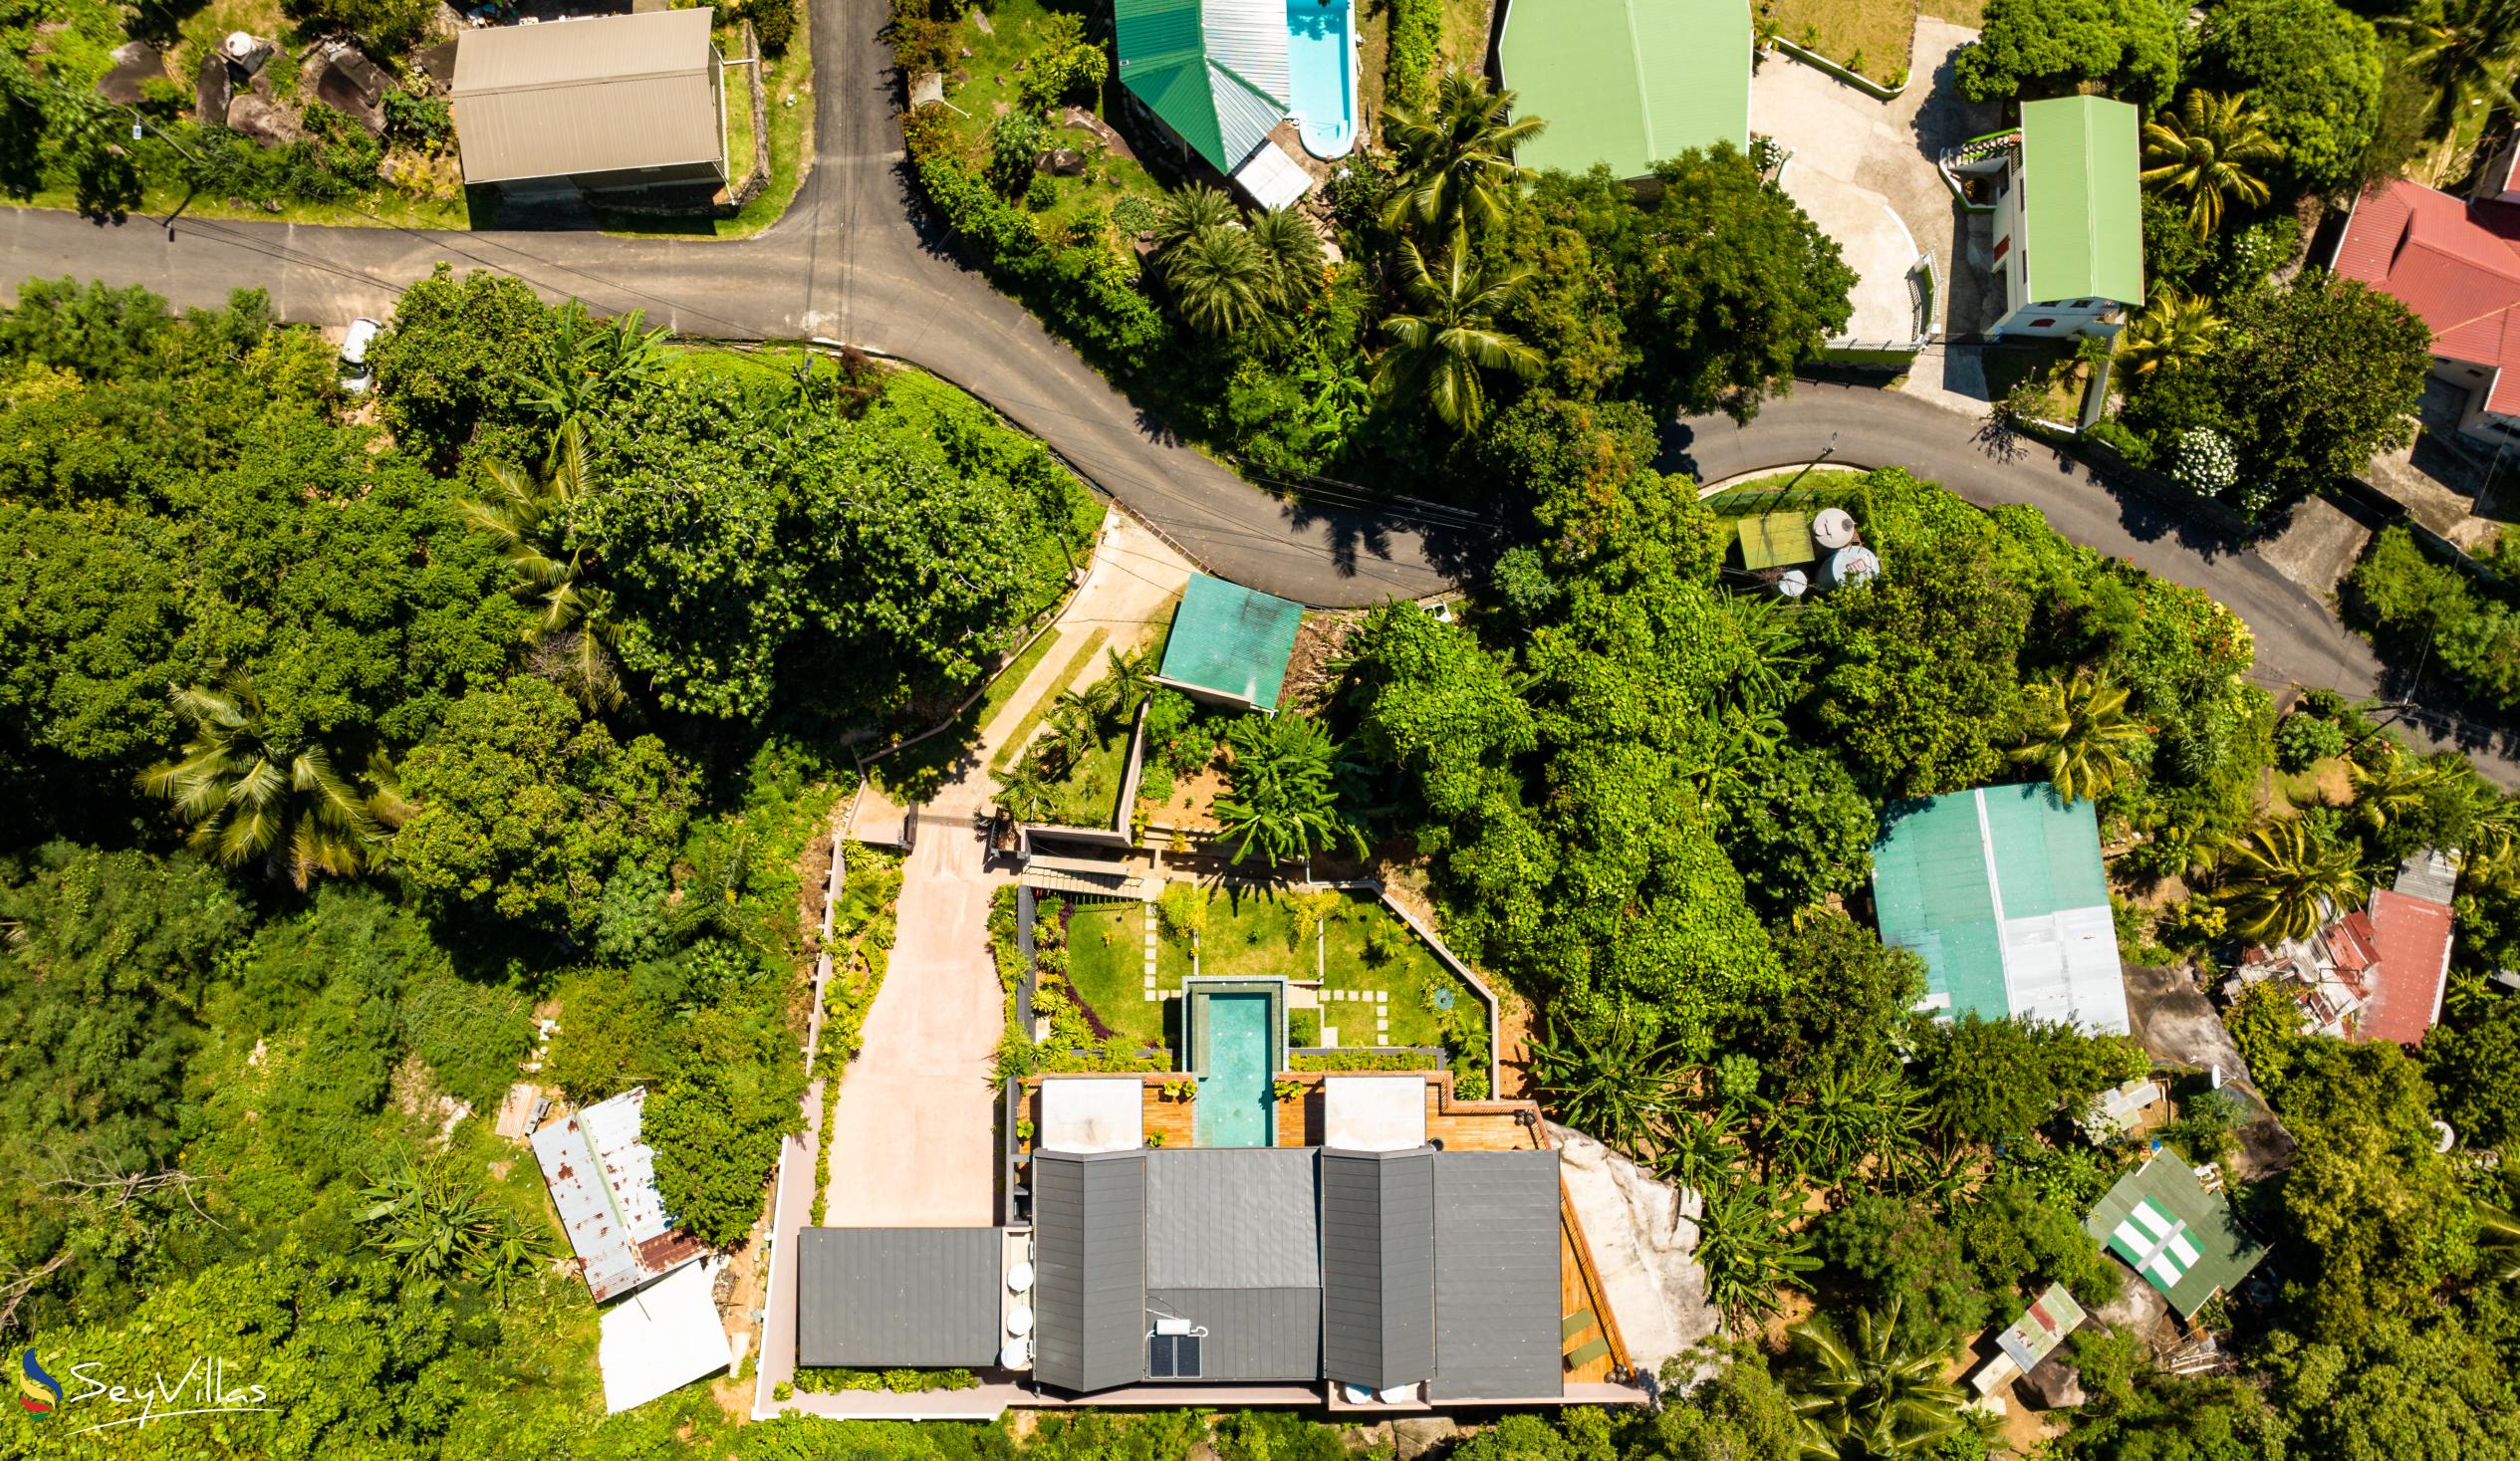 Foto 12: Maison Gaia - Extérieur - Mahé (Seychelles)